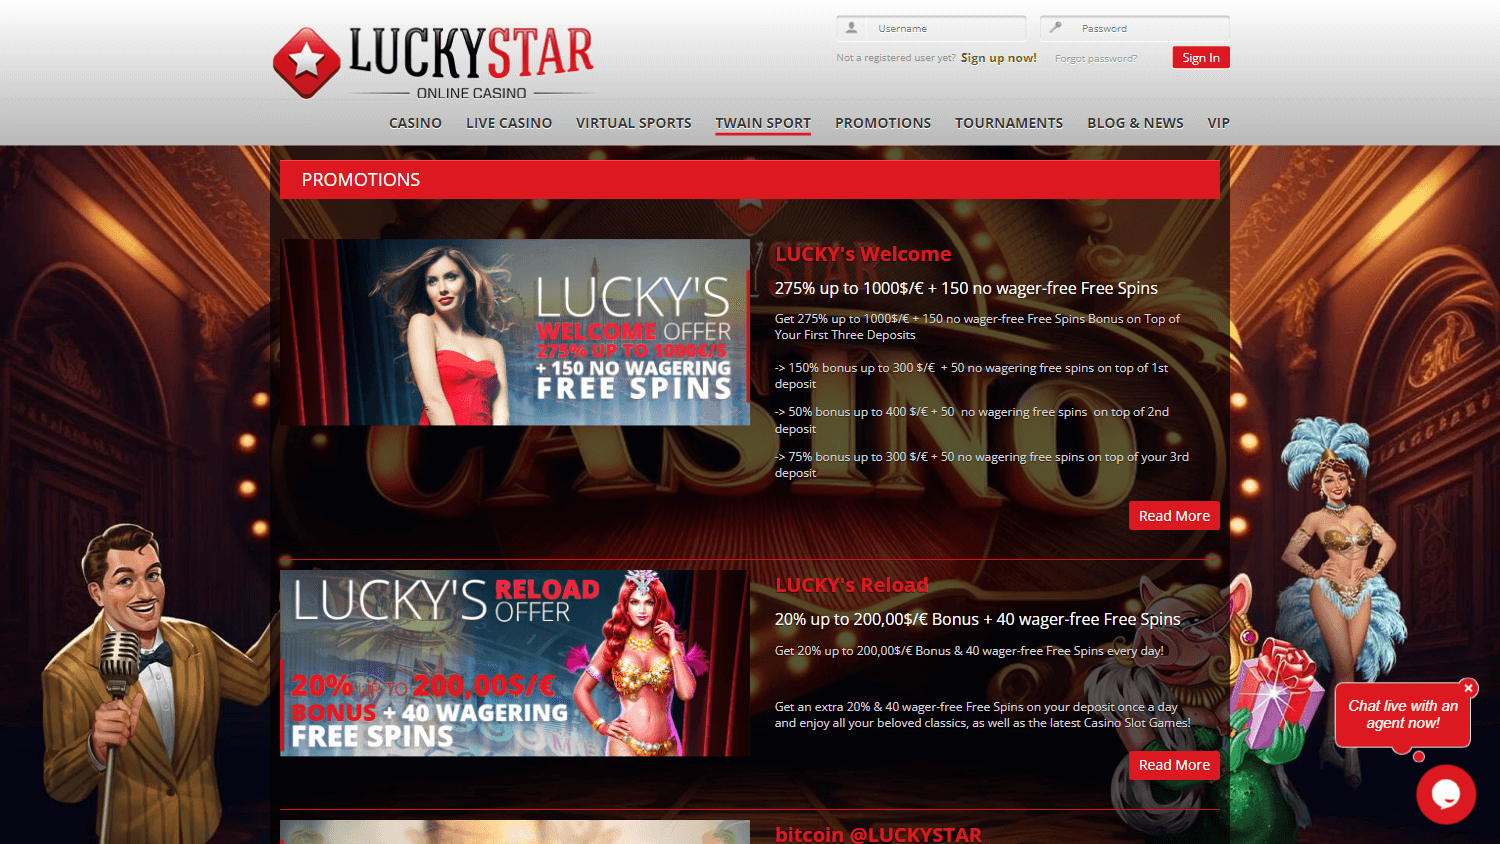 luckystar_casino_promotions_desktop